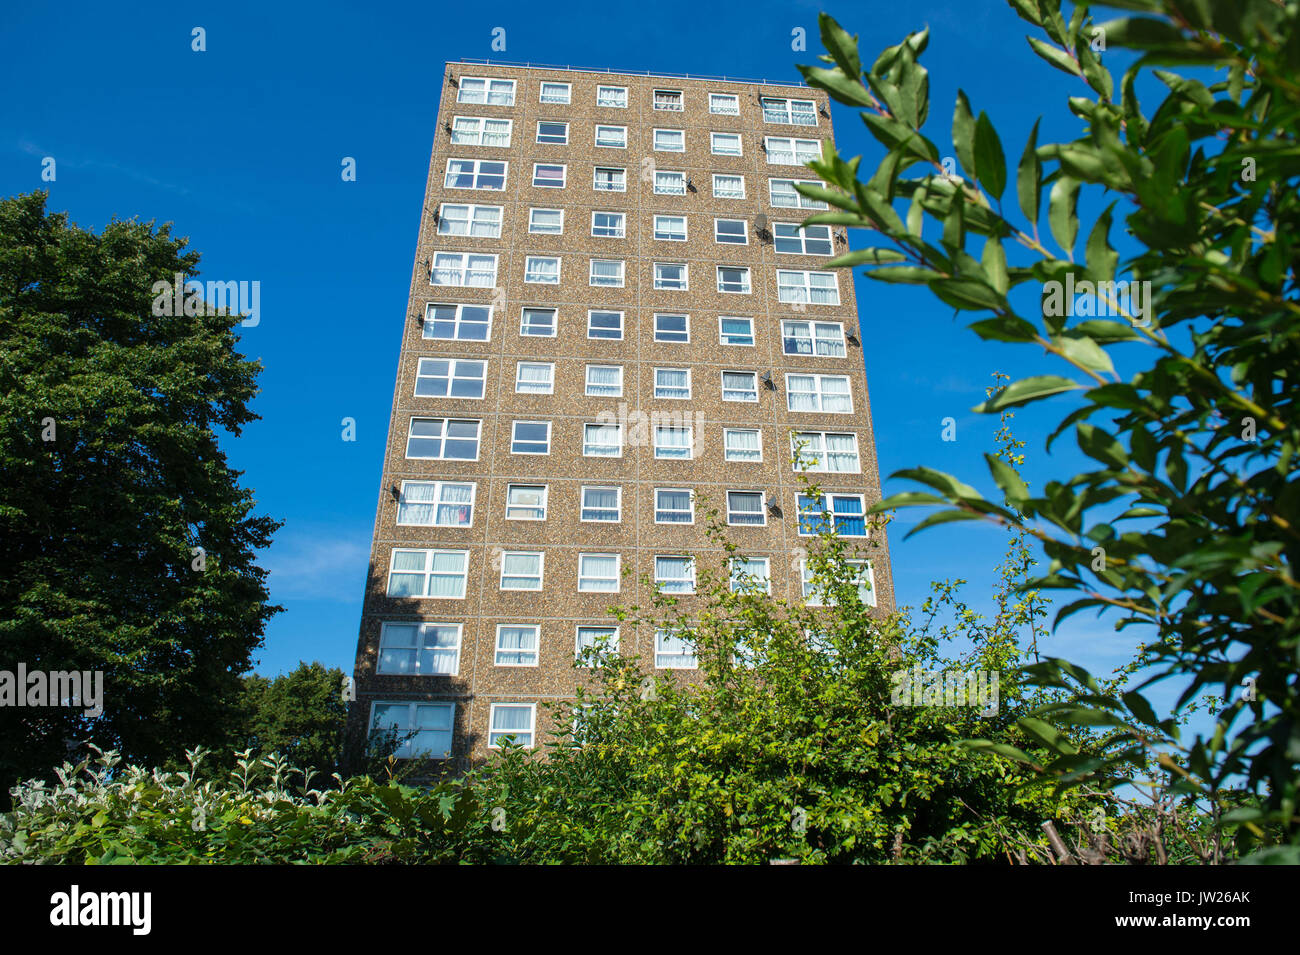 Vue générale des Ledbury Towers, dans le sud de Londres, où les résidents devant être évacués des immeubles d'appartements londoniens ont déclaré que les préoccupations en matière de sécurité ont été ignorées pendant des décennies. Banque D'Images